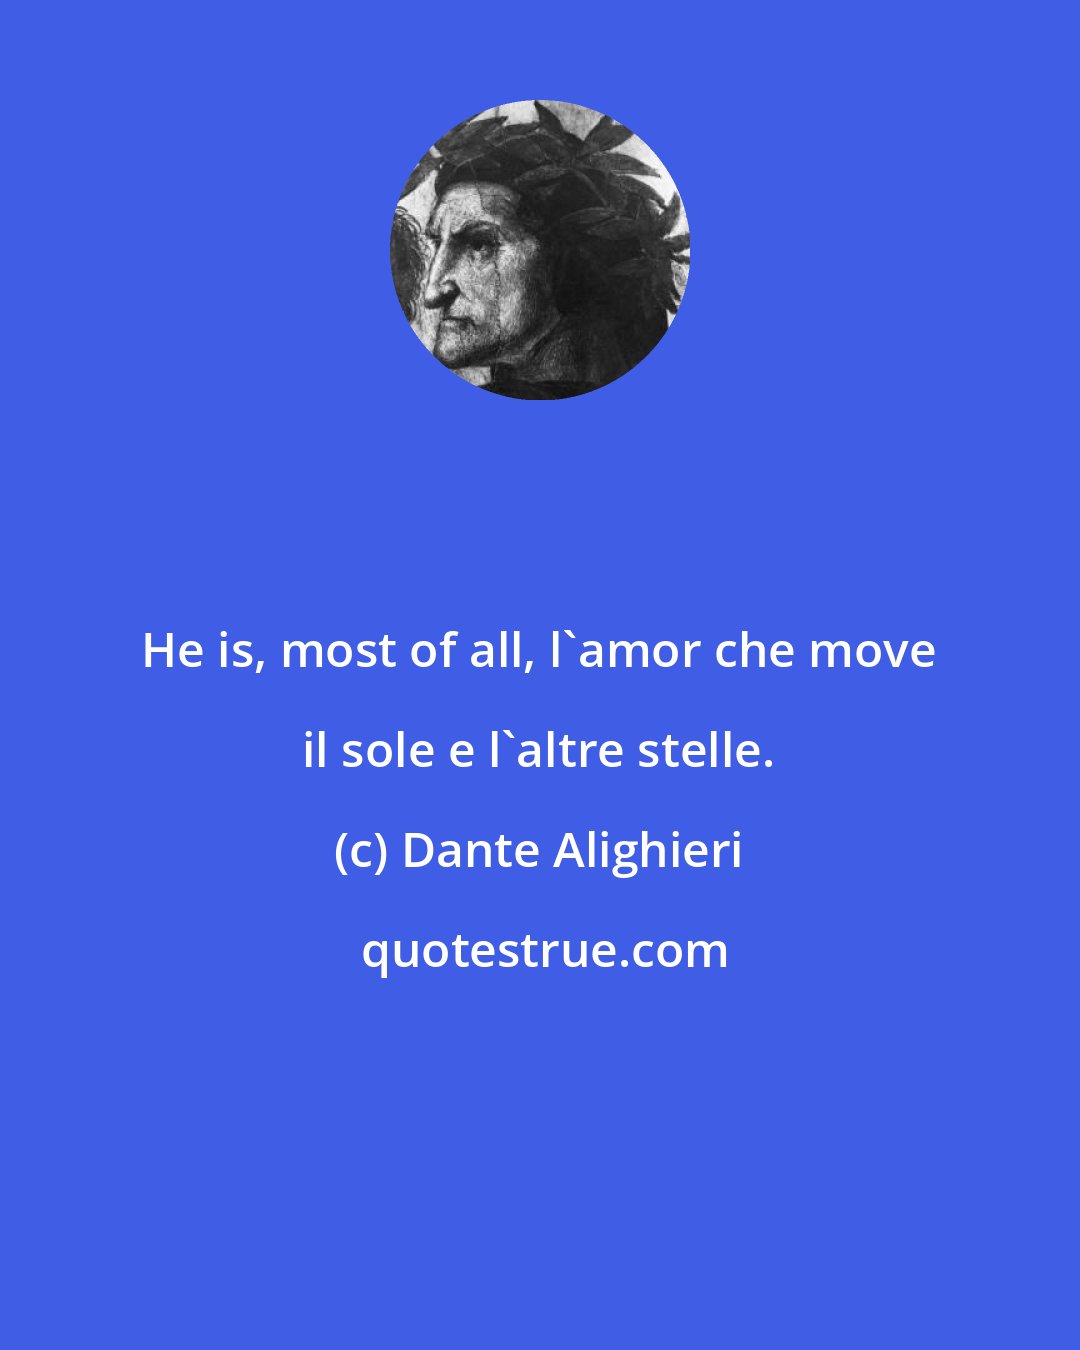 Dante Alighieri: He is, most of all, l'amor che move il sole e l'altre stelle.